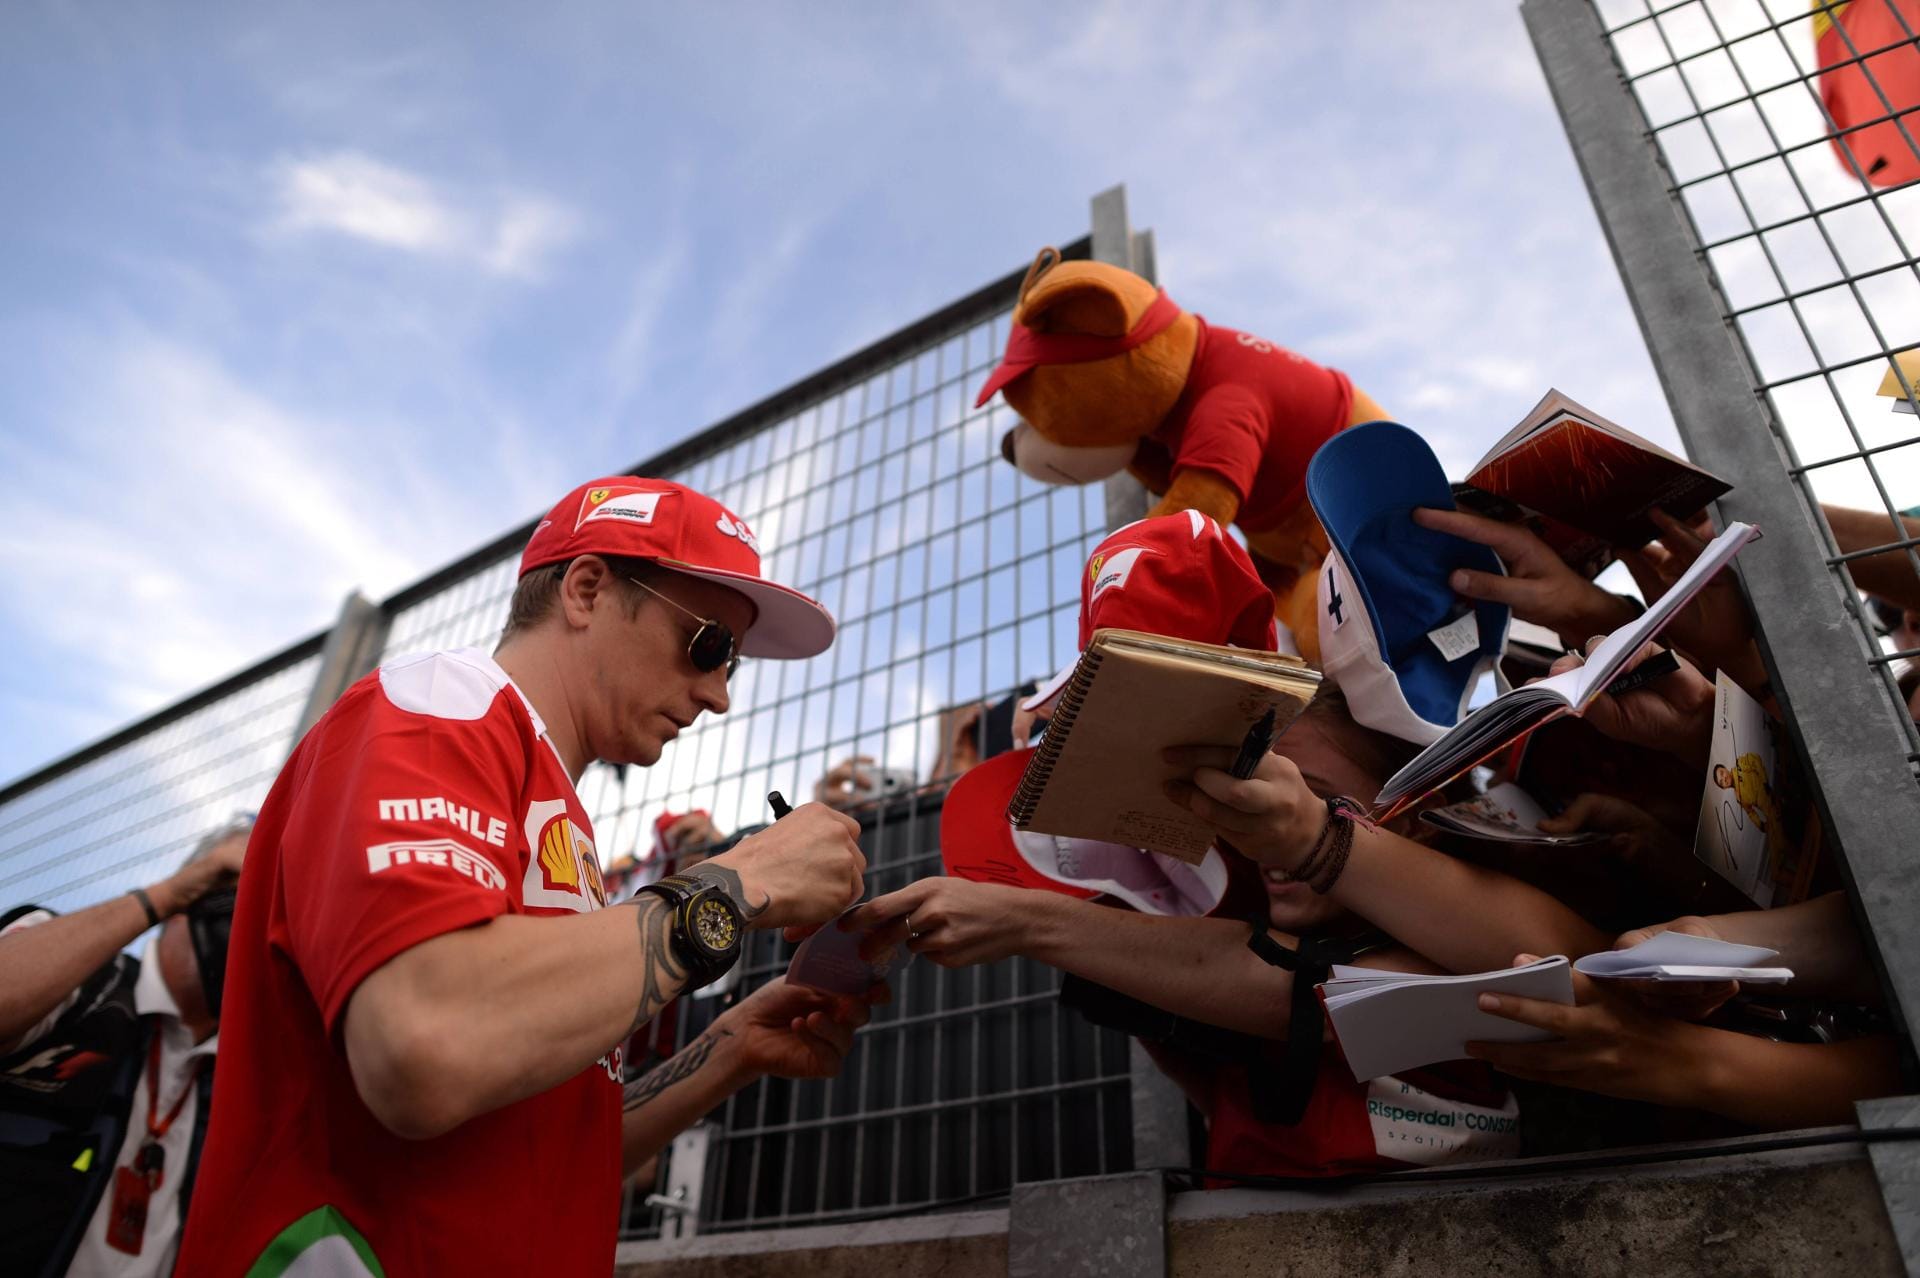 Kimi Räikkönens Autogramme sind heiß begehrt. Zum Rennen in Ungarn kommen traditionell immer viele Fans aus seiner Heimat Finnland.